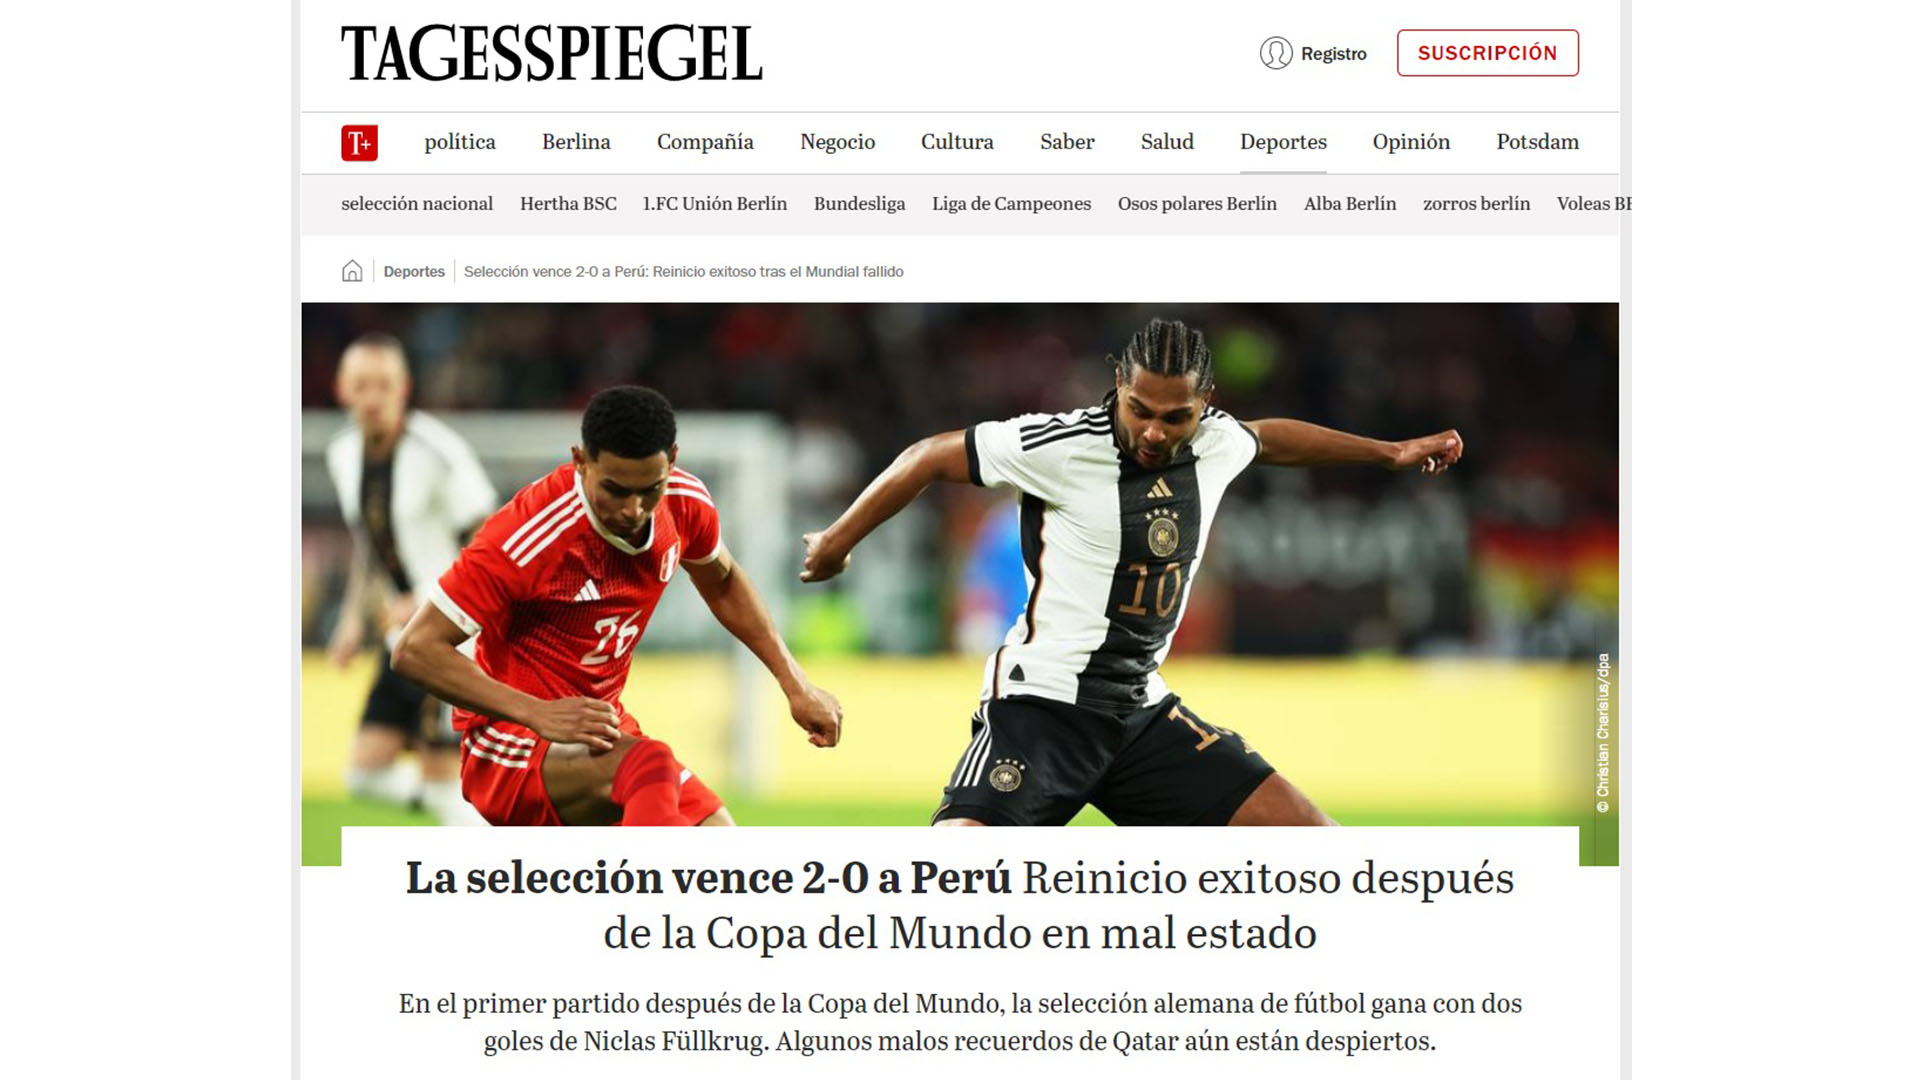 Tagesspiegel rescató la victoria alemana ante Perú, aunque señala dudas por errores del pasado.